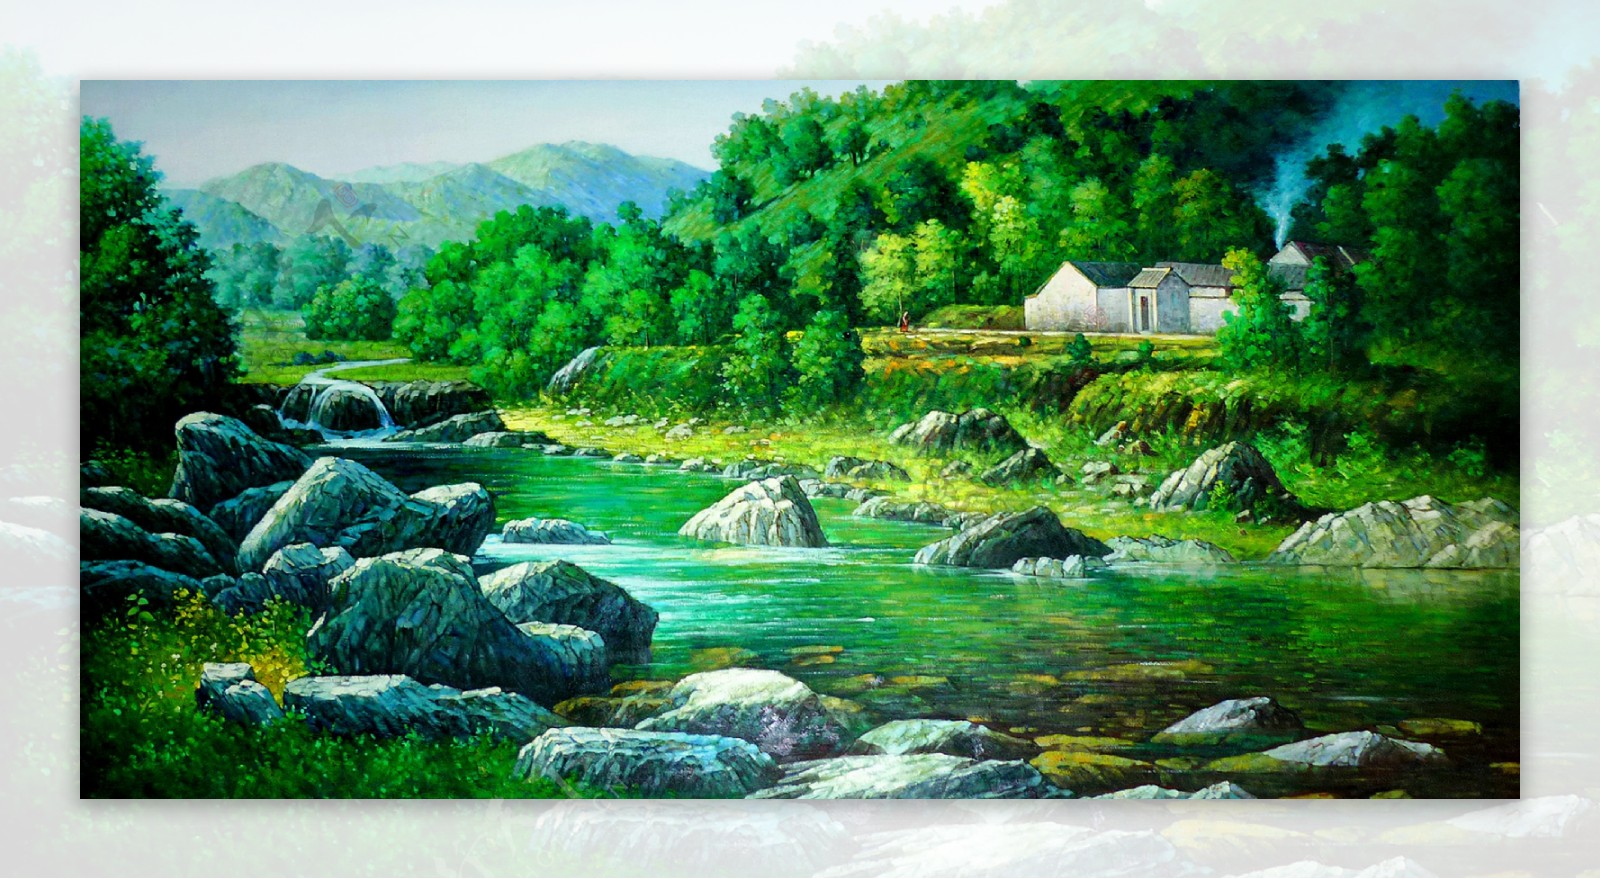 村庄景观油画图片